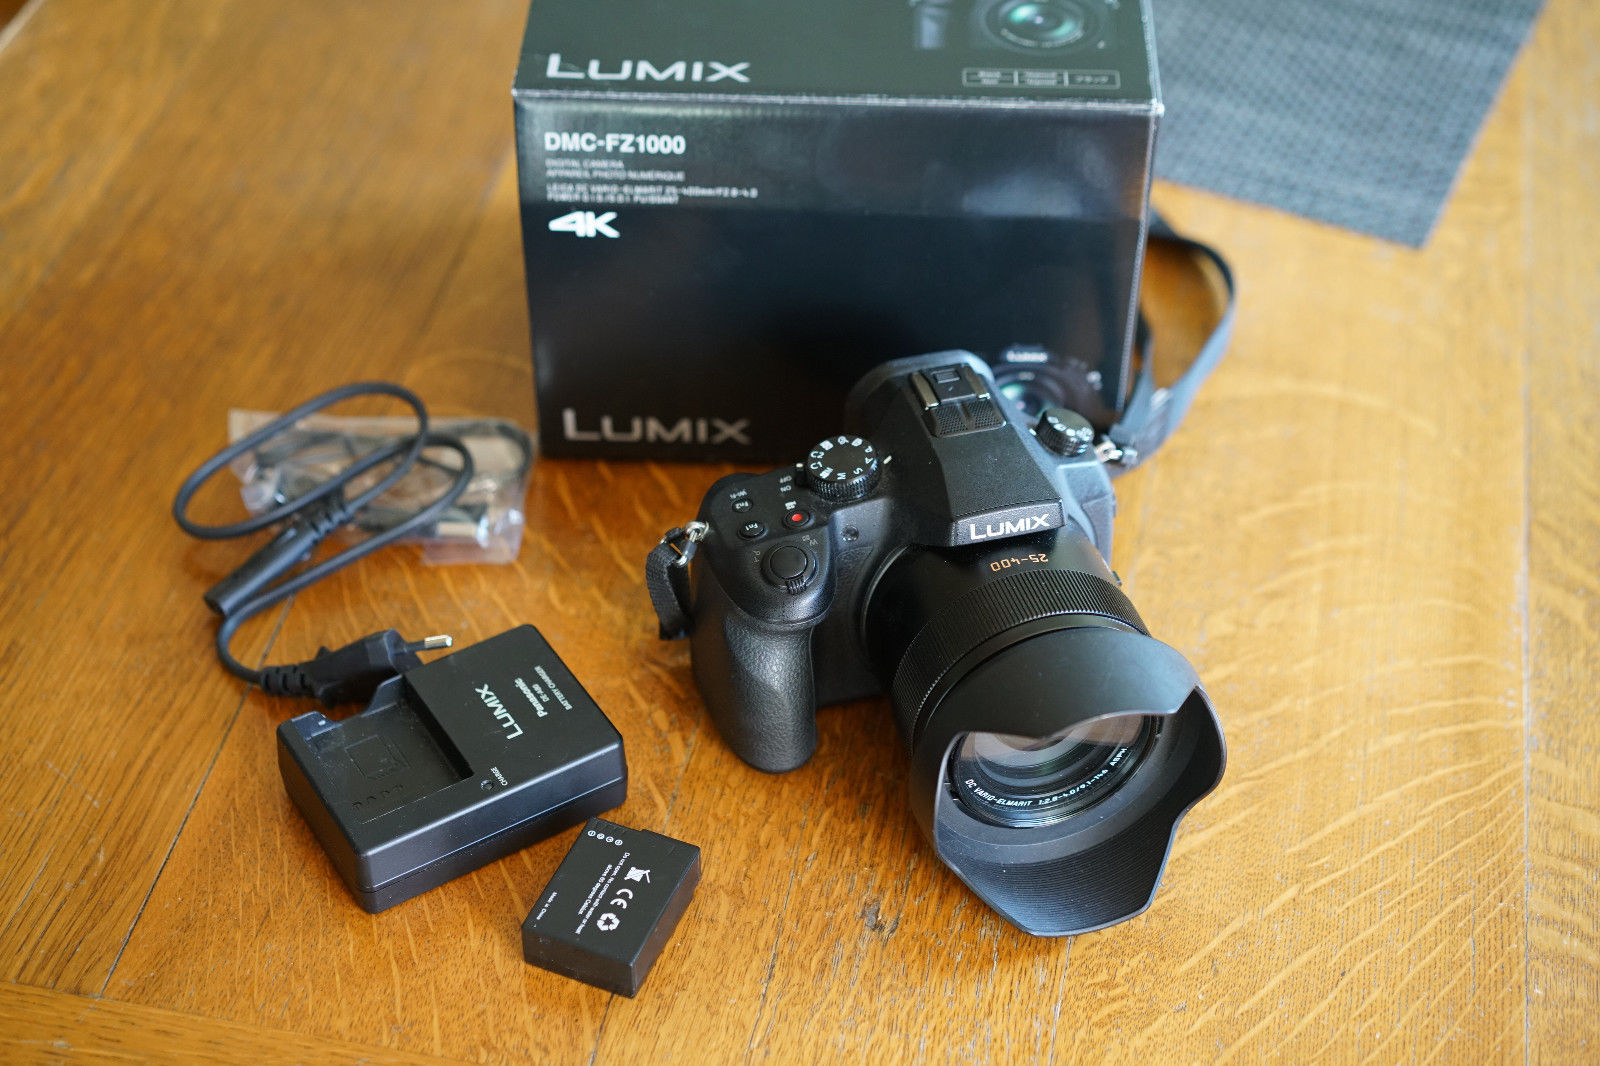 Panasonic LUMIX DMC-FZ1000 20.1 MP Digitalkamera - Schwarz